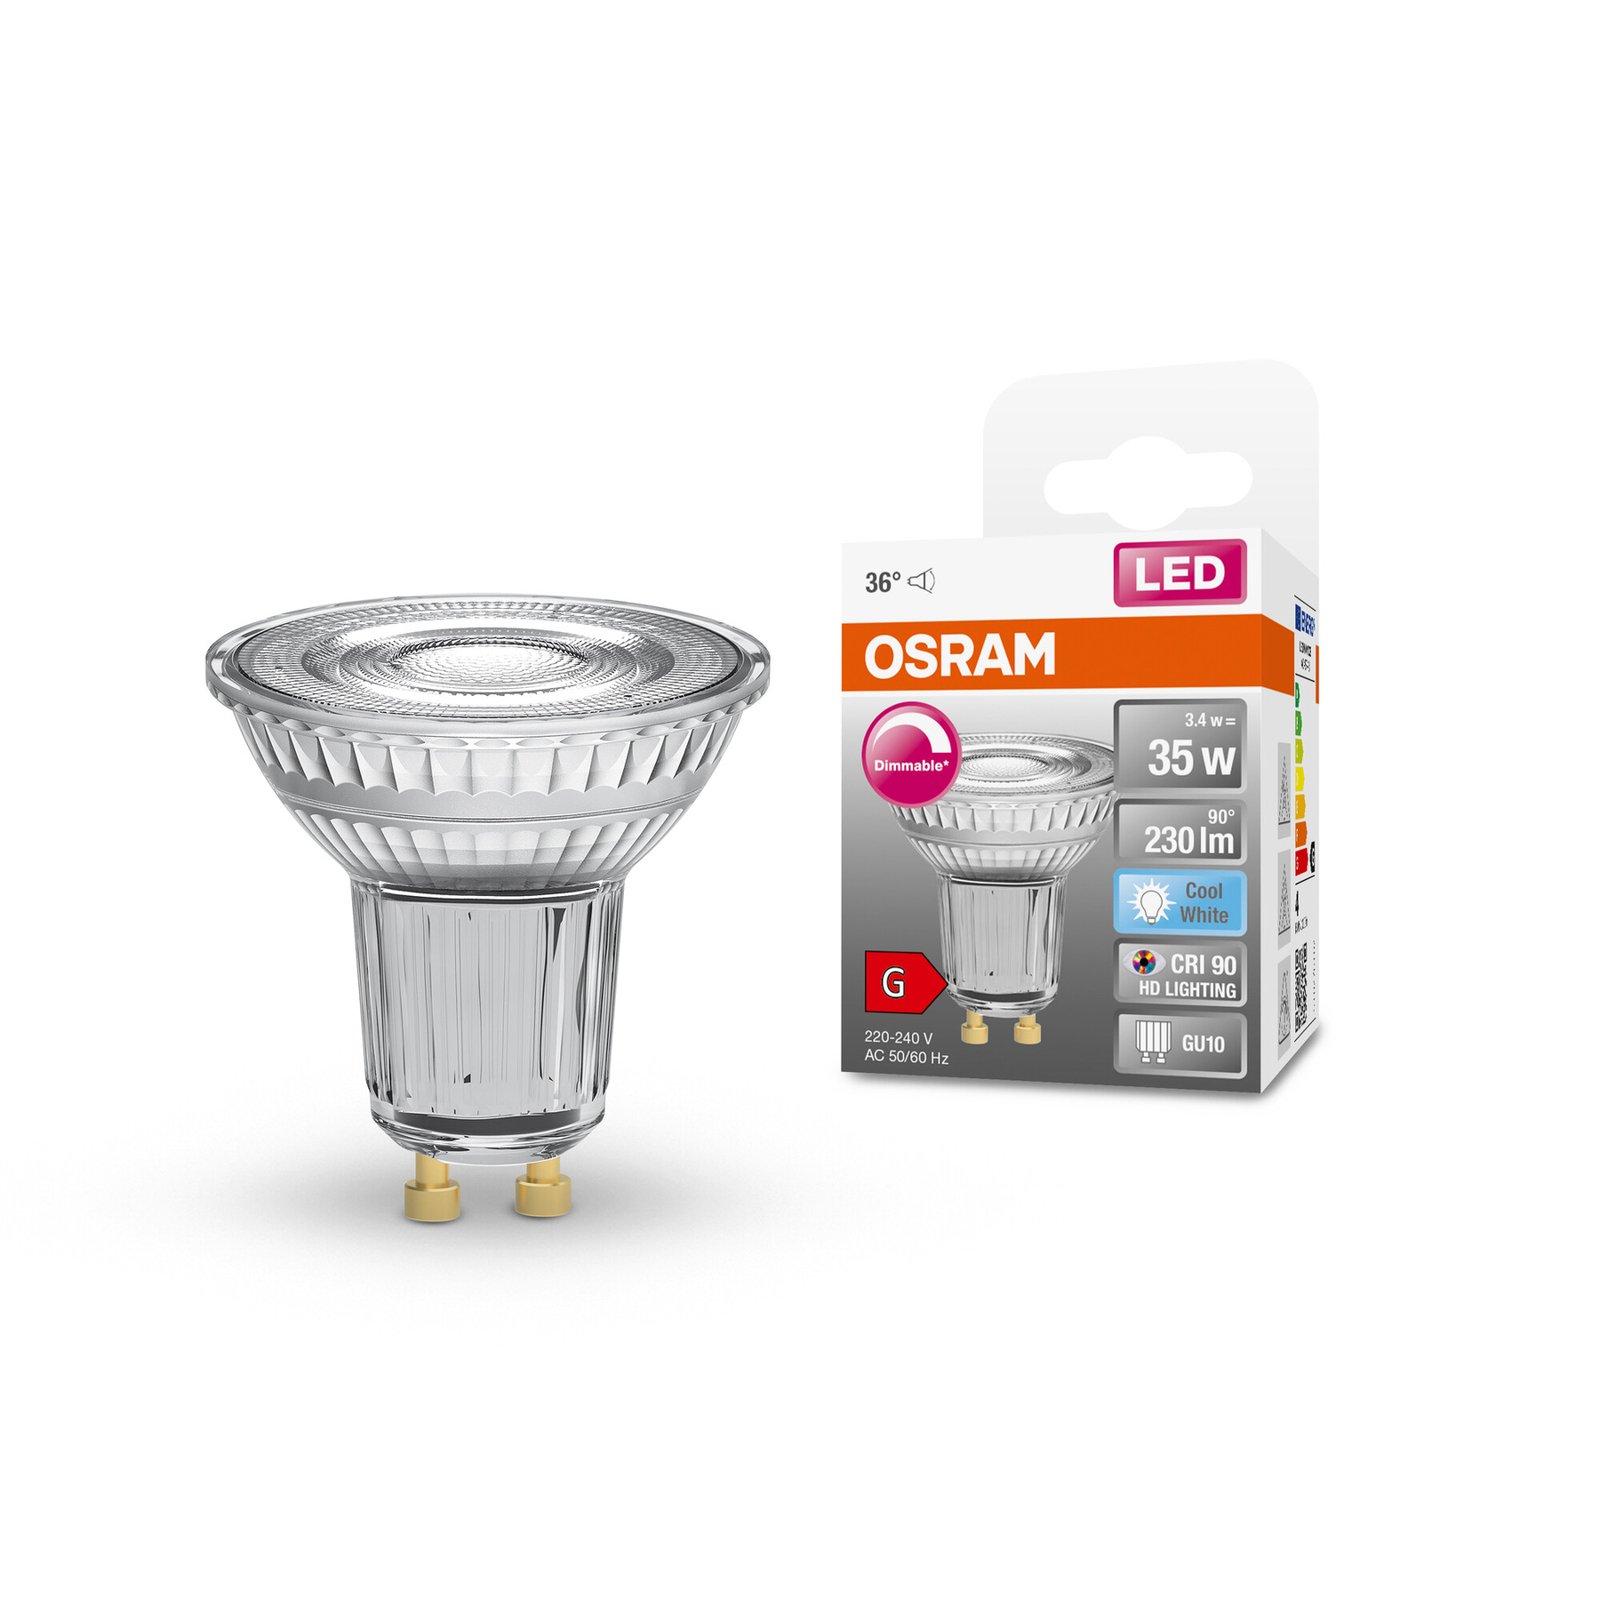 OSRAM LED refletor GU10 3.4W 940 36° 230lm dim